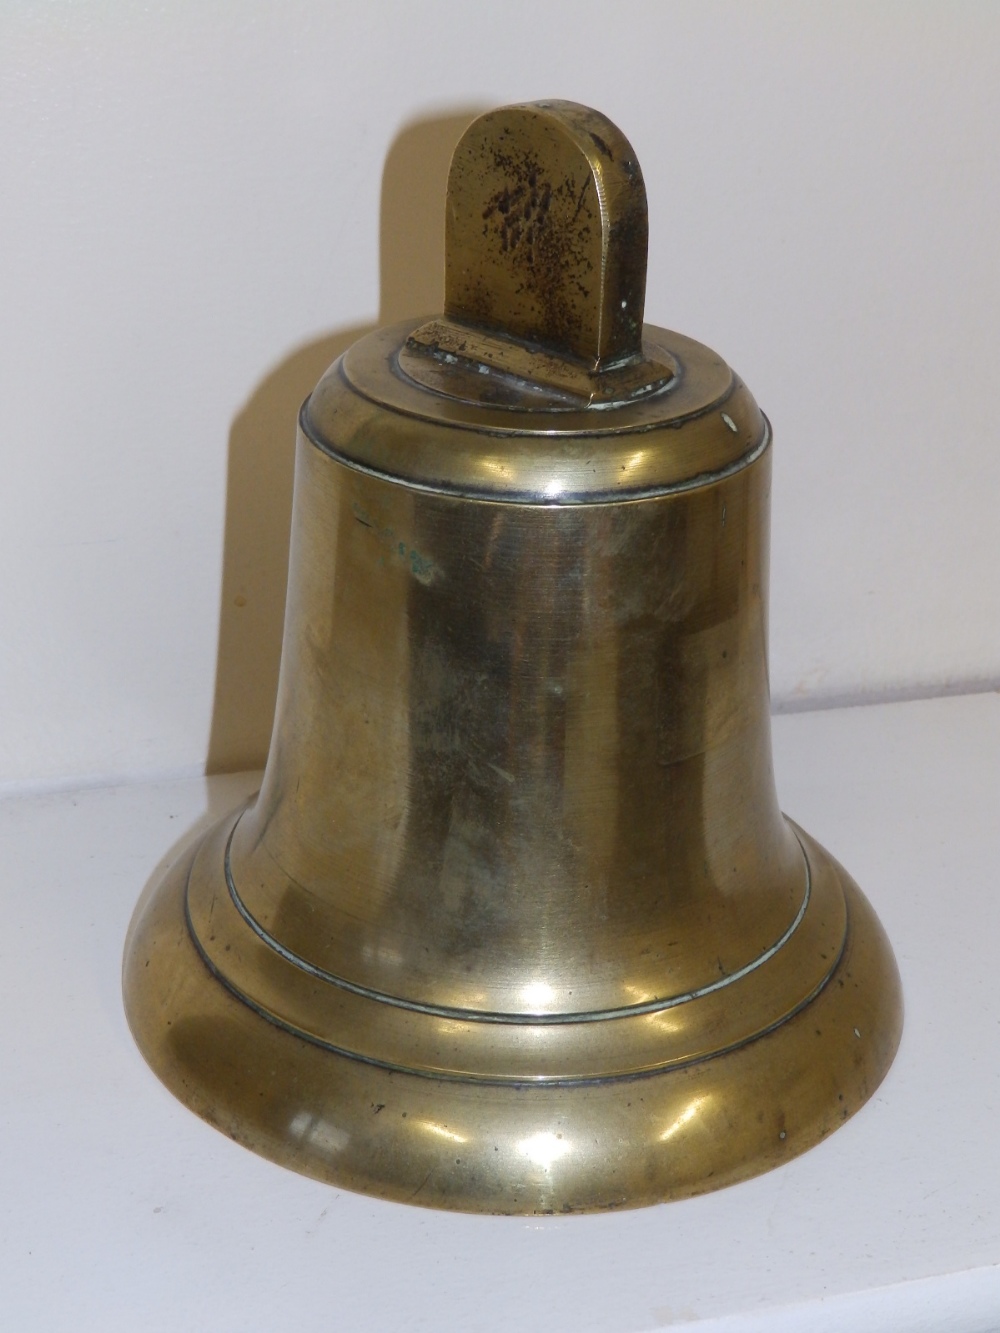 A brass bell.